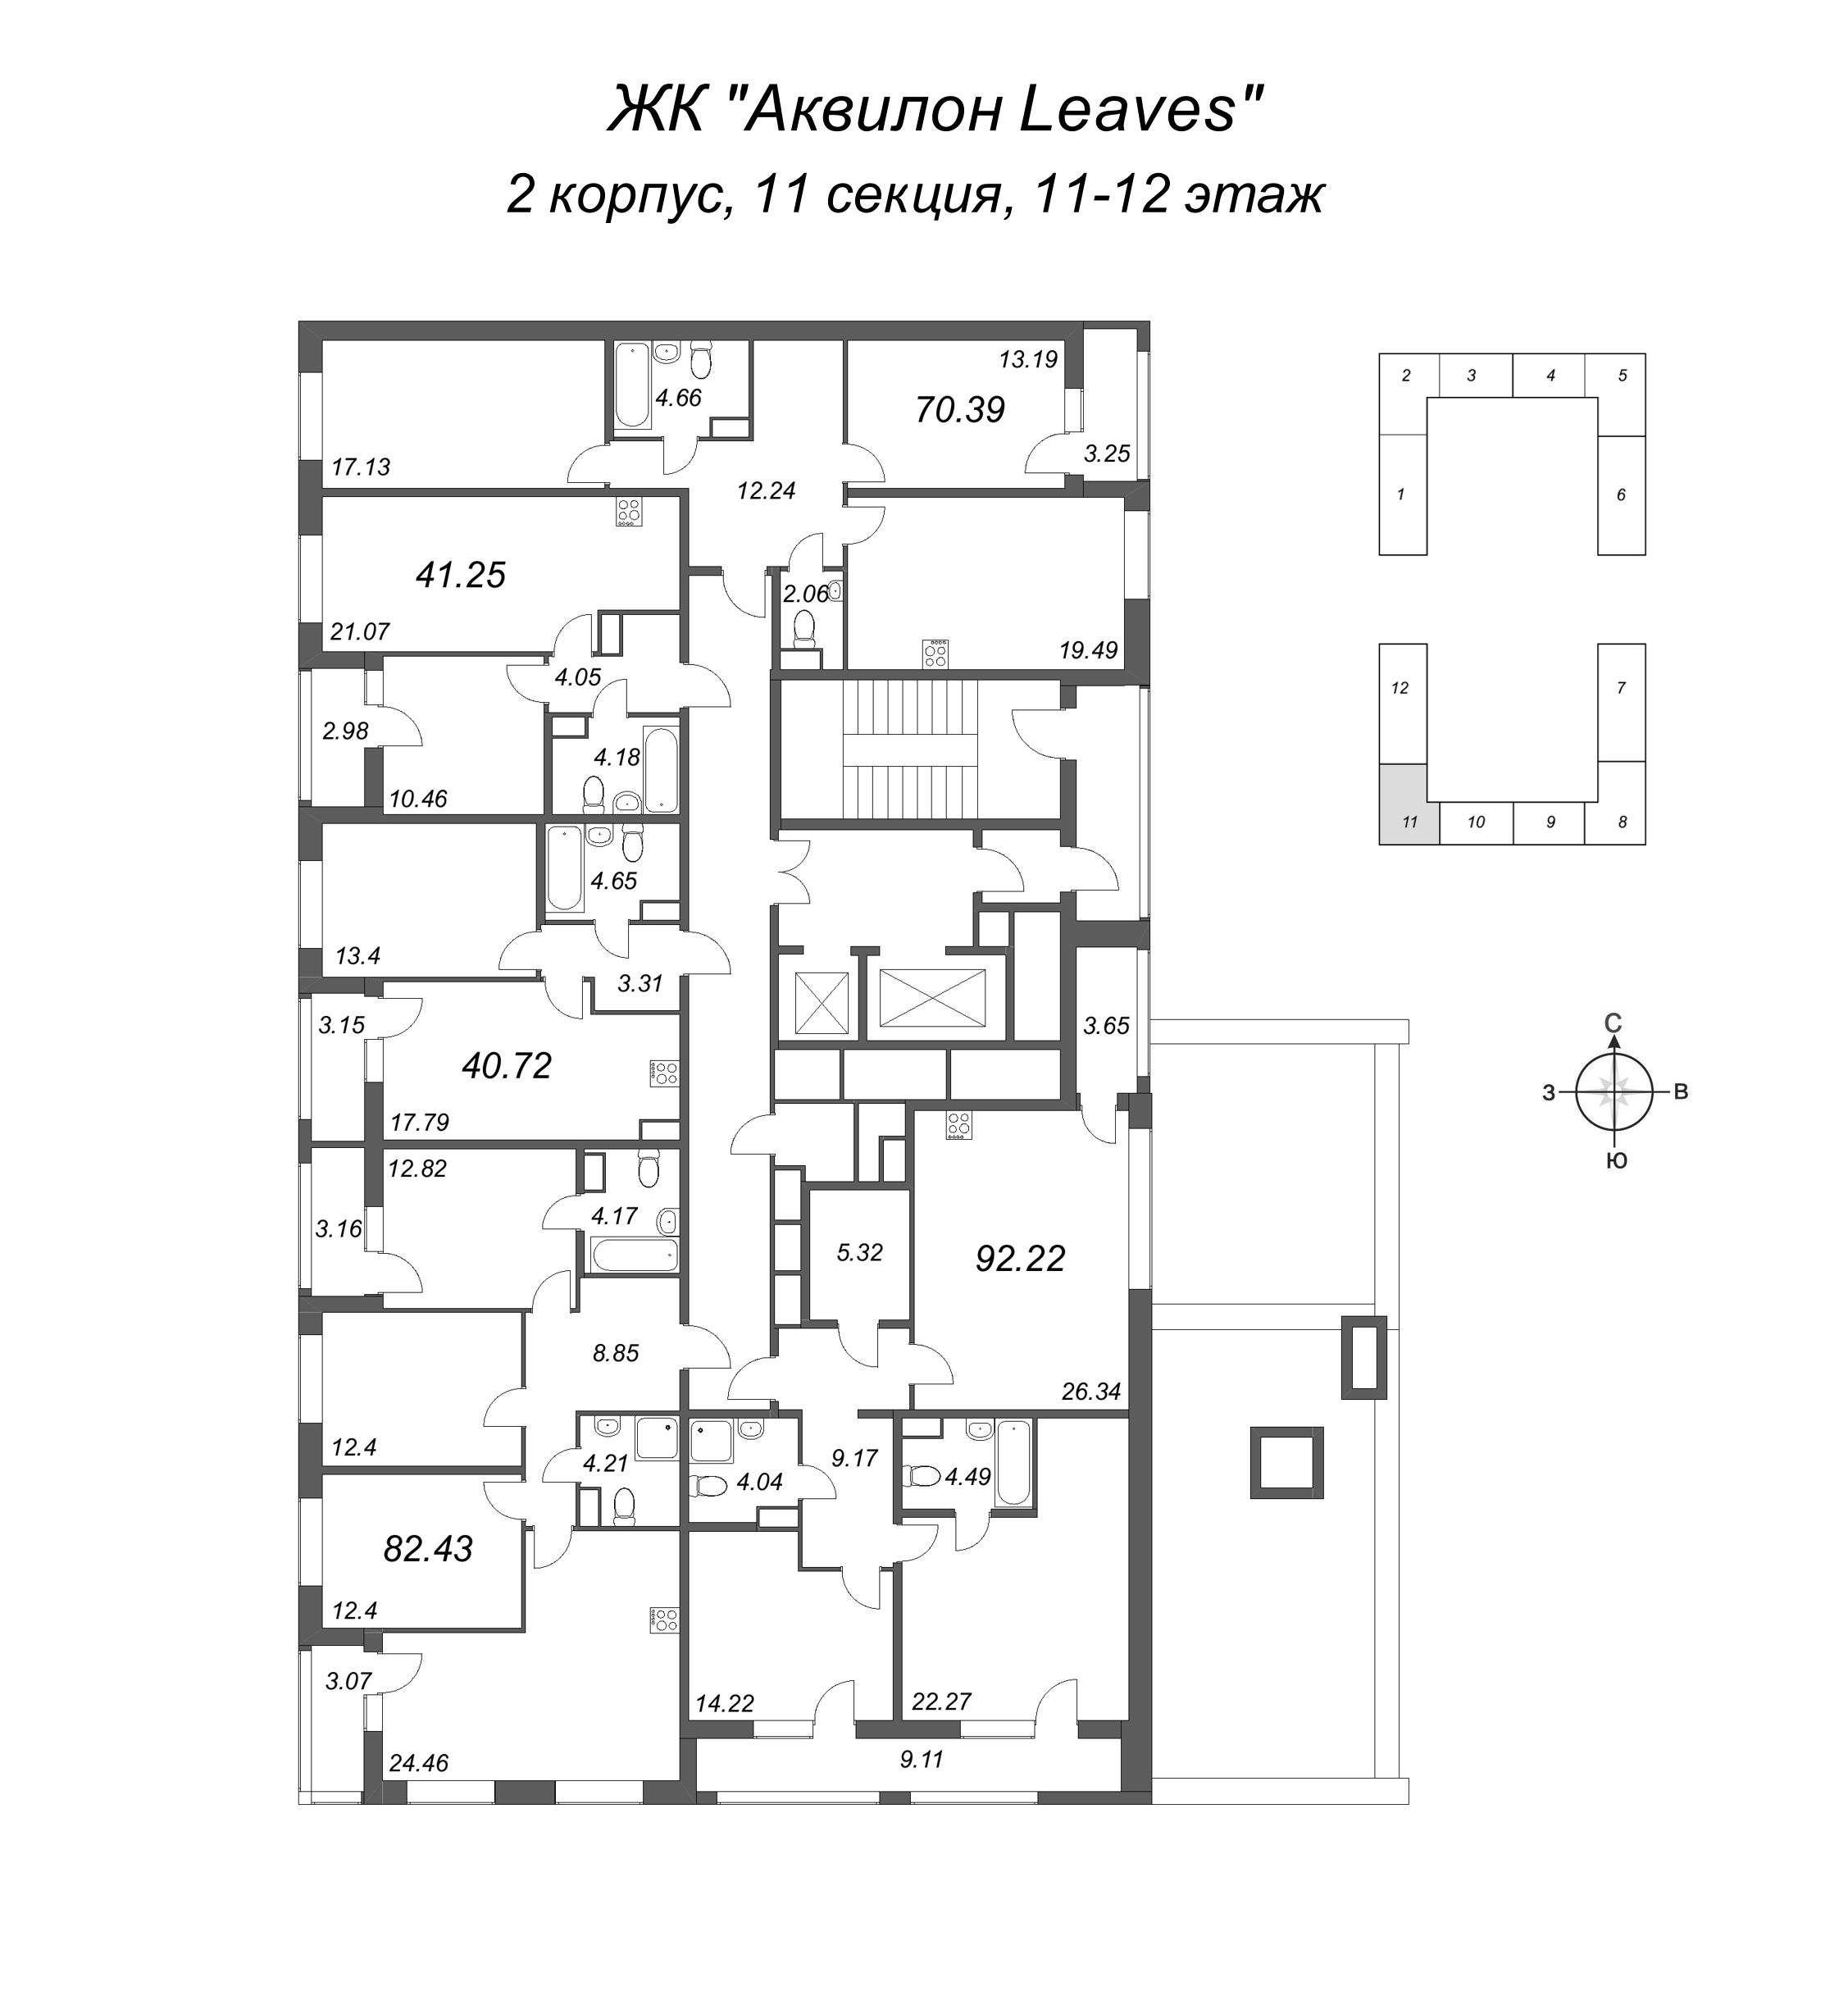 3-комнатная (Евро) квартира, 92.22 м² в ЖК "Аквилон Leaves" - планировка этажа